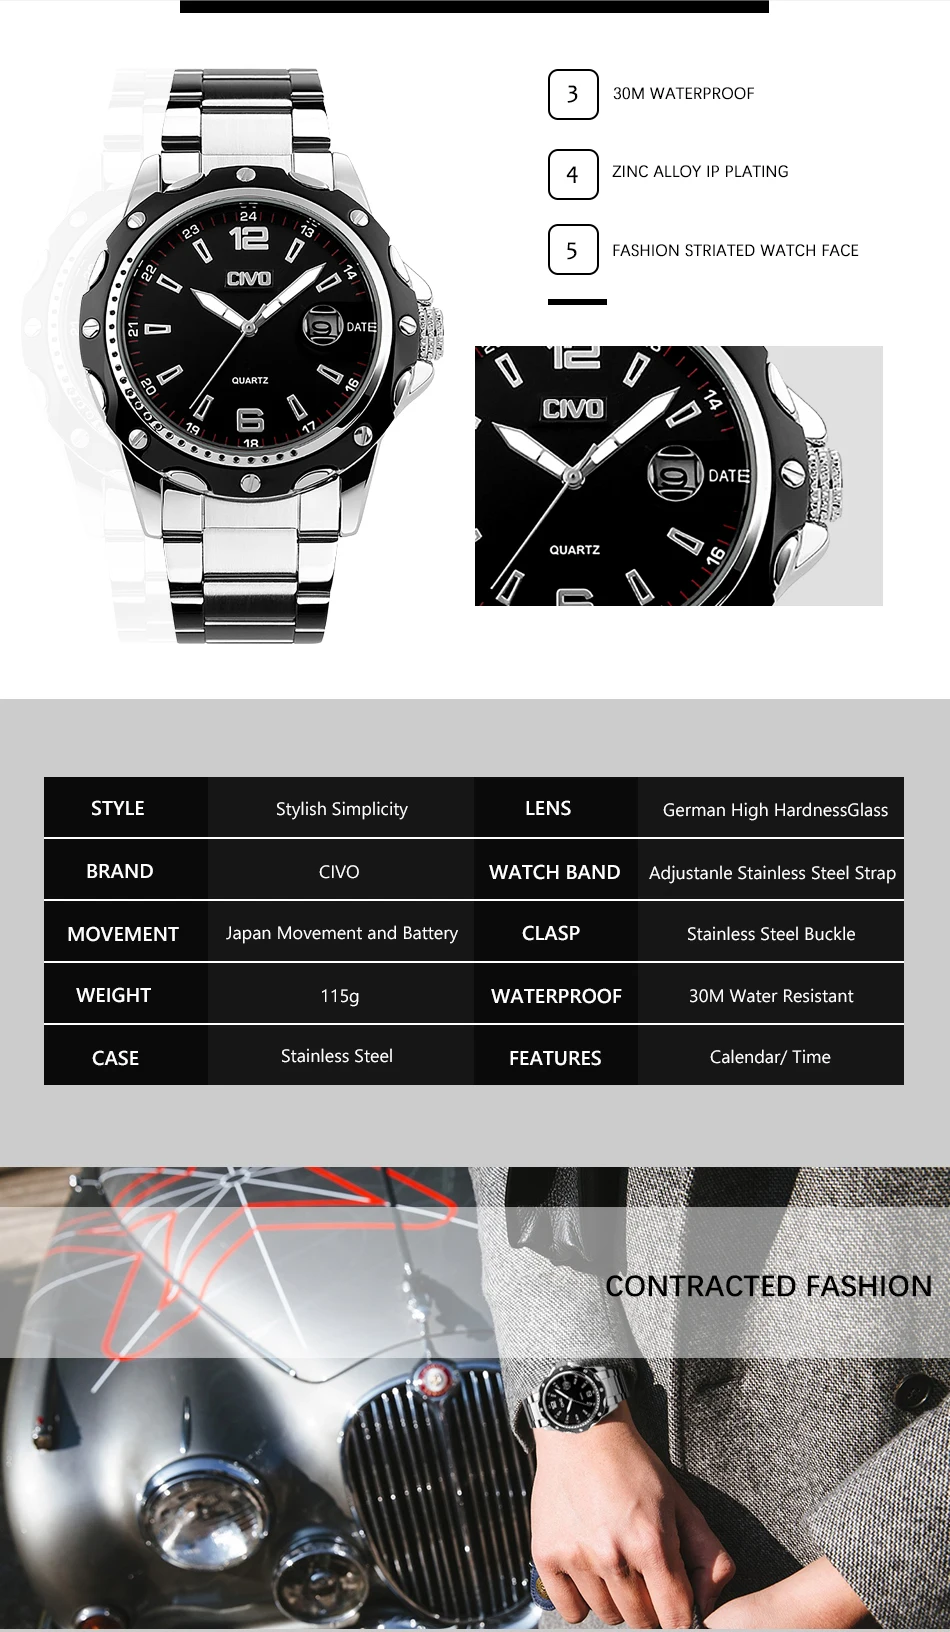 CIVO Relogio Masculino мужские часы Роскошные известный бренд Мужская мода Повседневное платье часы Военная Униформа кварцевые наручные часы Saat